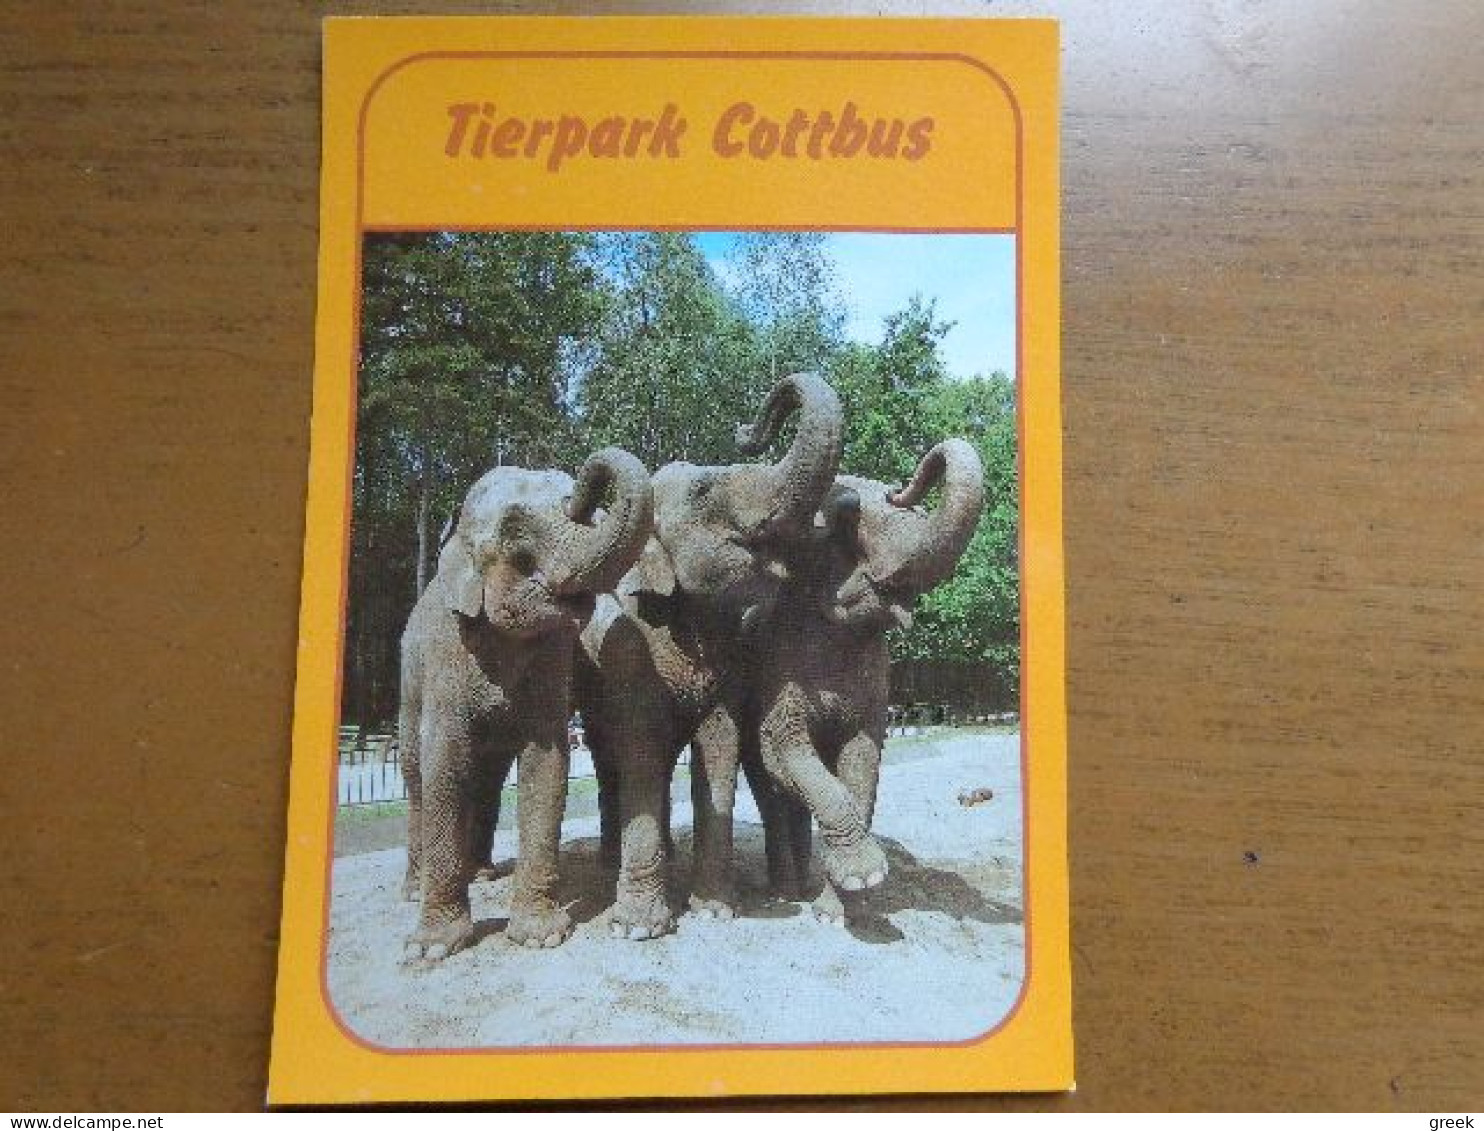 Zoo, Dierenpark, Tierpark / Tierpark Cottbus, Asiatische Elefanten --> Unwritten - Elefanten